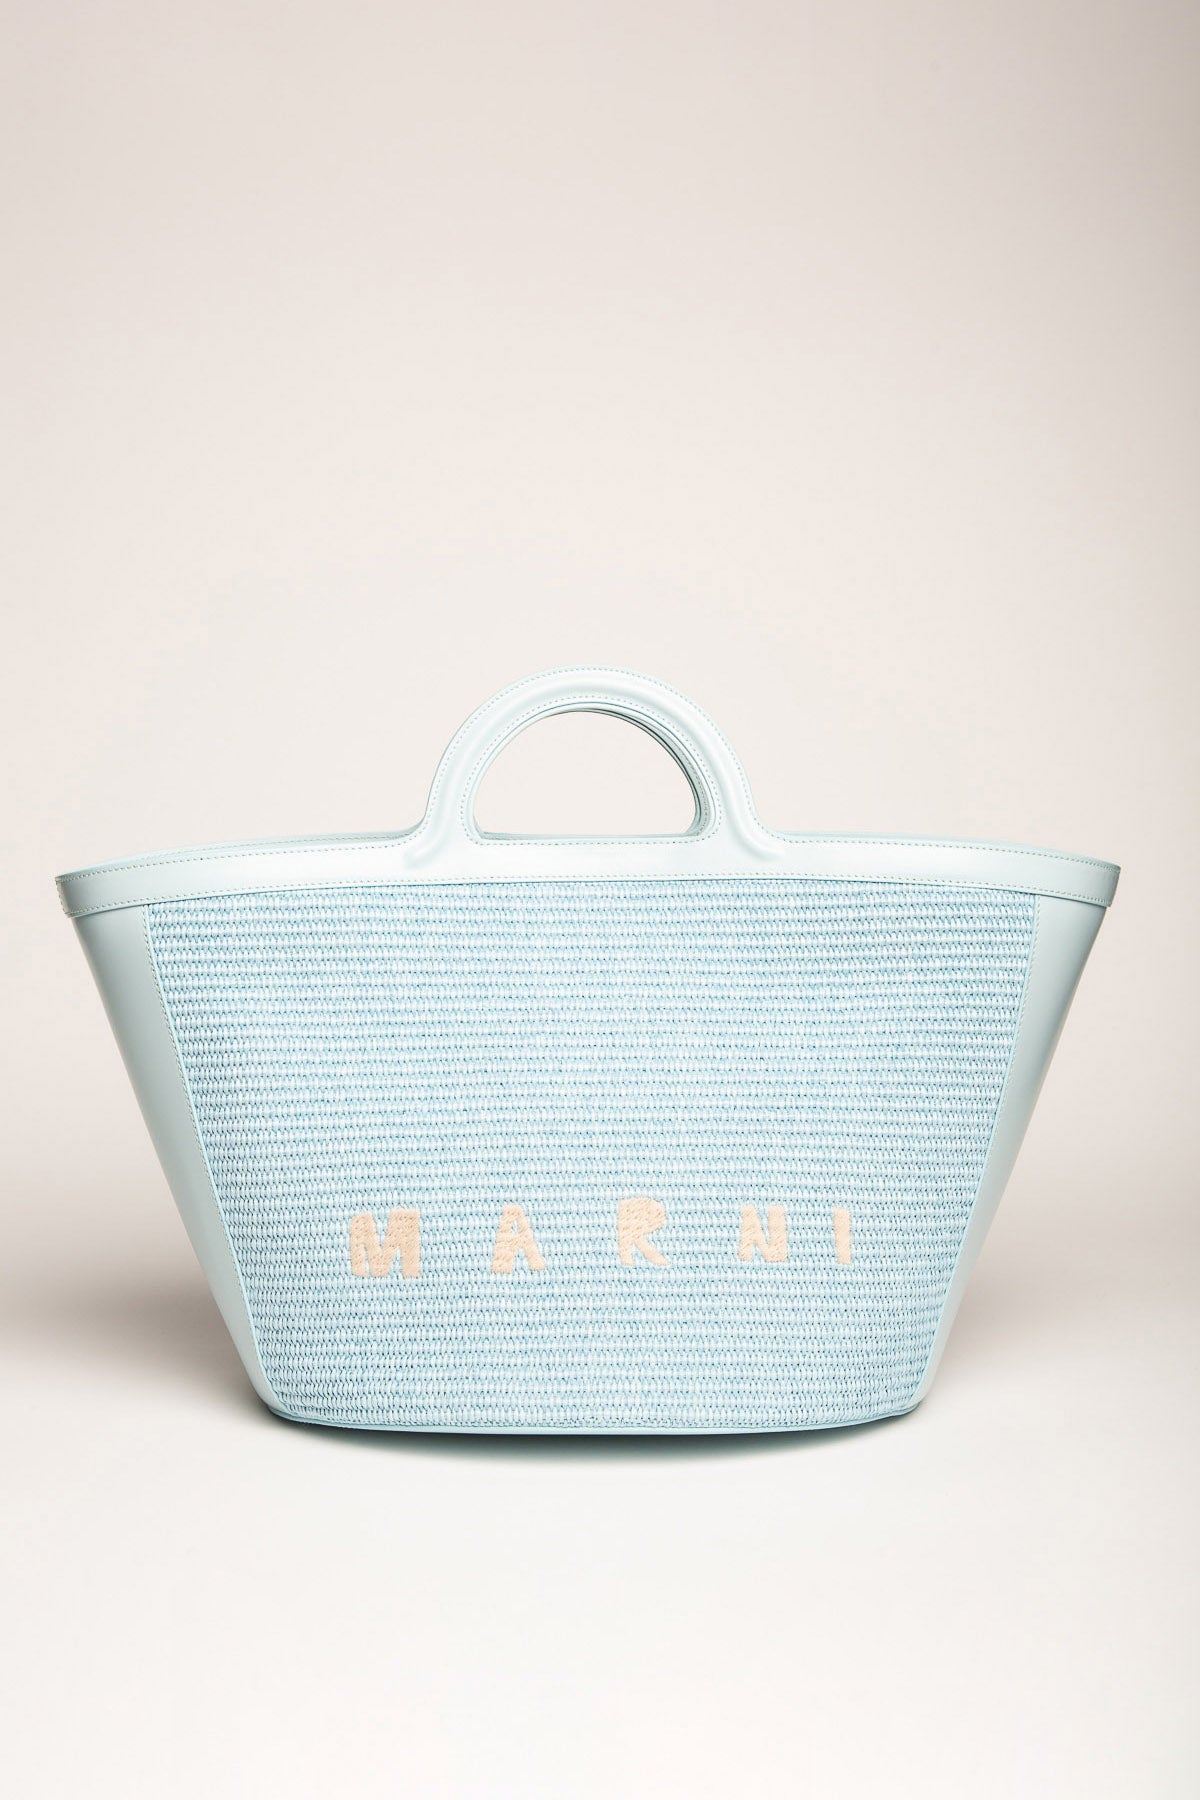 MARNI Small Tropicalia Basket Top Handle Bag